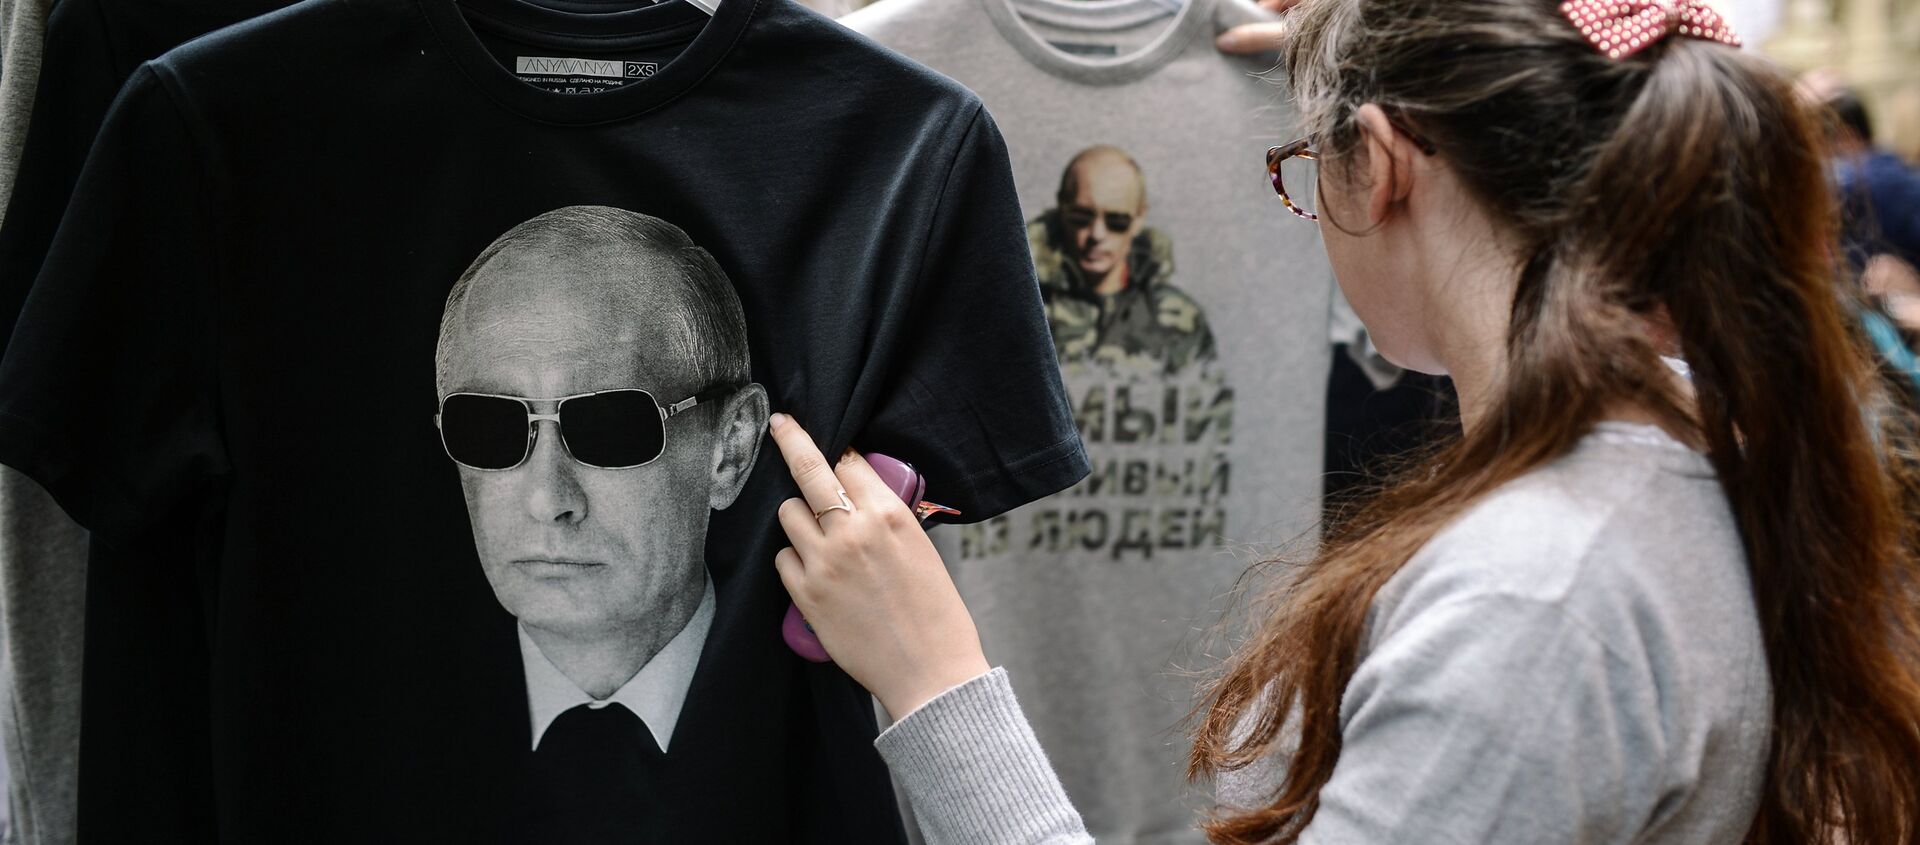 Khởi động bán T-shirt với hình ông Putin tại cửa hàng GUM Moskva - Sputnik Việt Nam, 1920, 08.10.2019